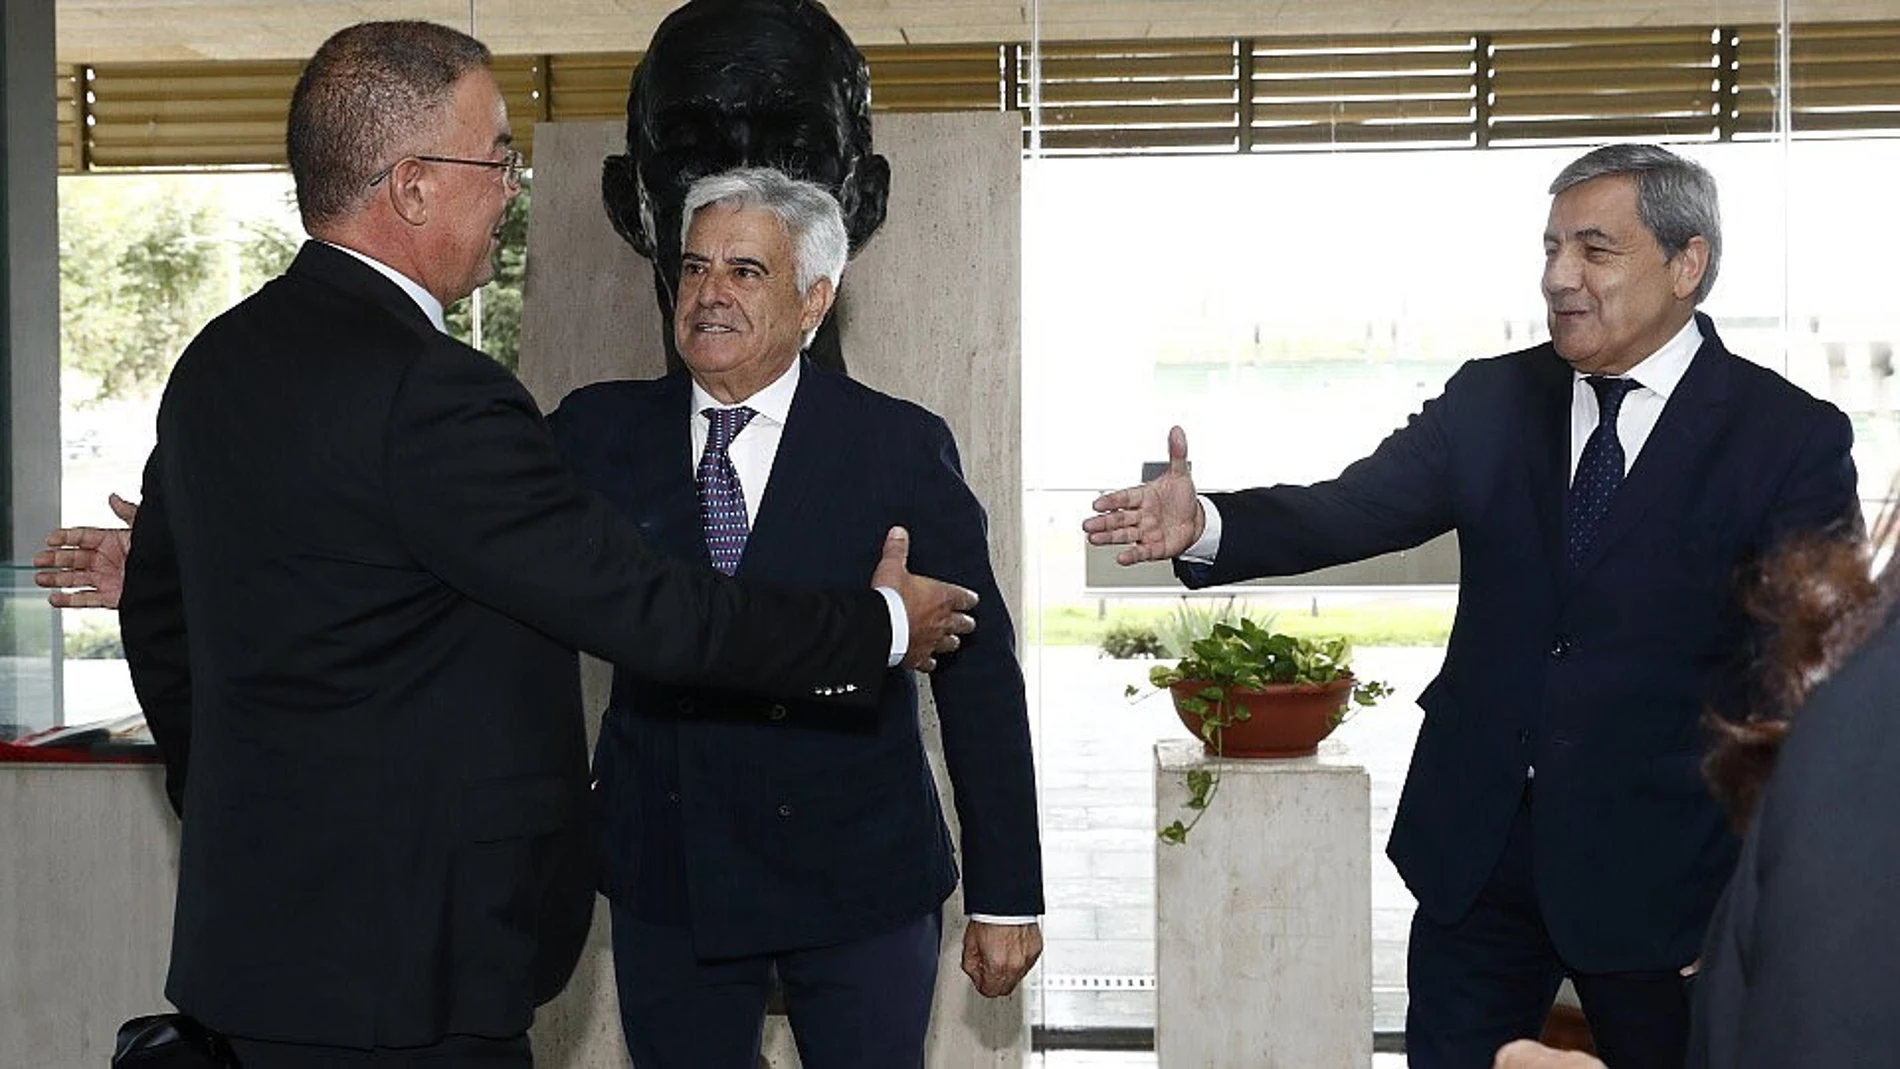 Pedro Rocha, Fernando Gomes y Fouzi Lekjaa, presidentes de la Federación Española, Portuguesa y Marroquí, respectivamente